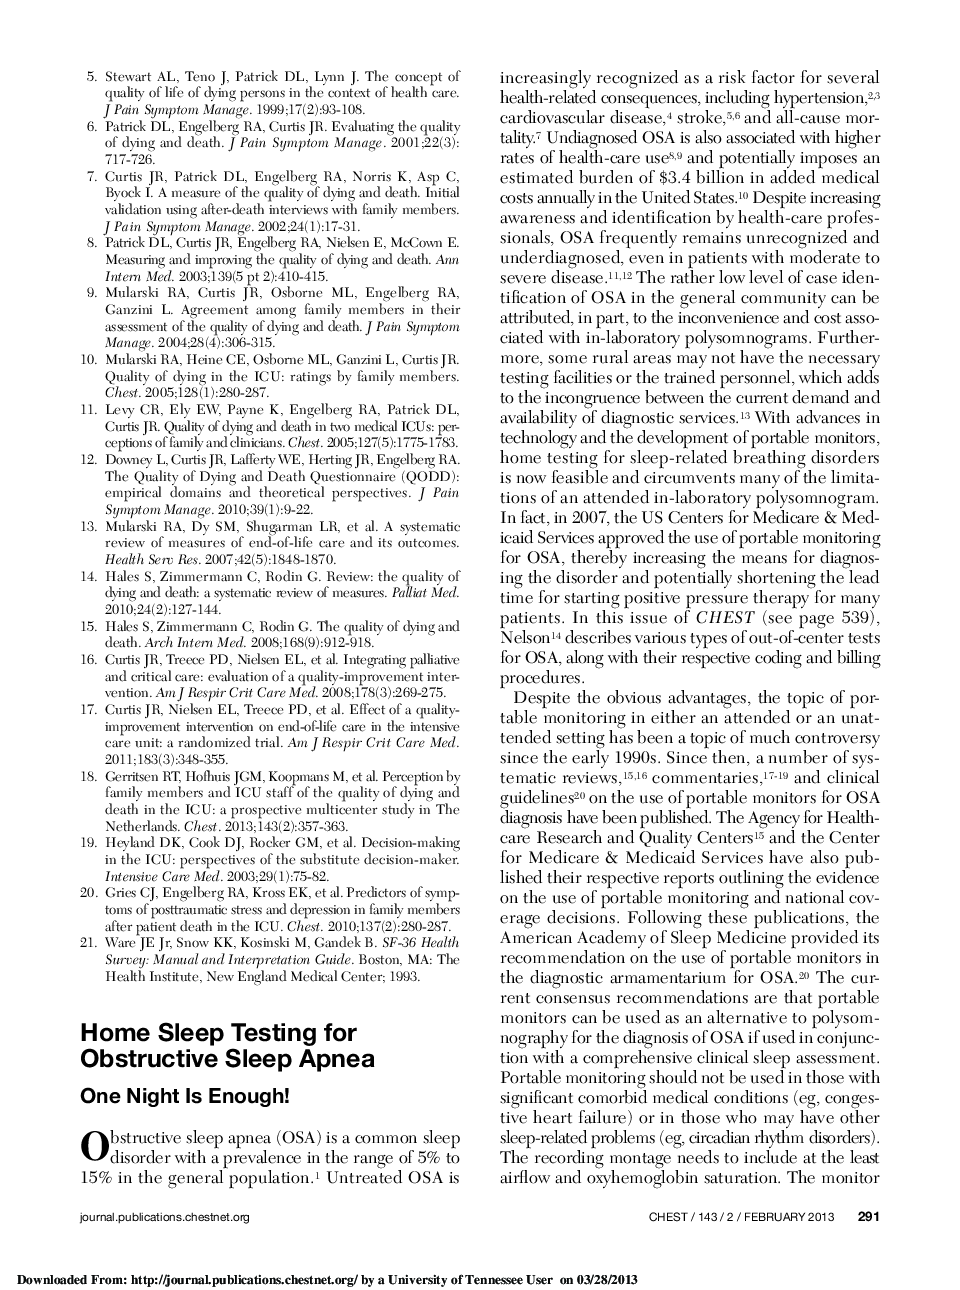 Home Sleep Testing for Obstructive Sleep Apnea